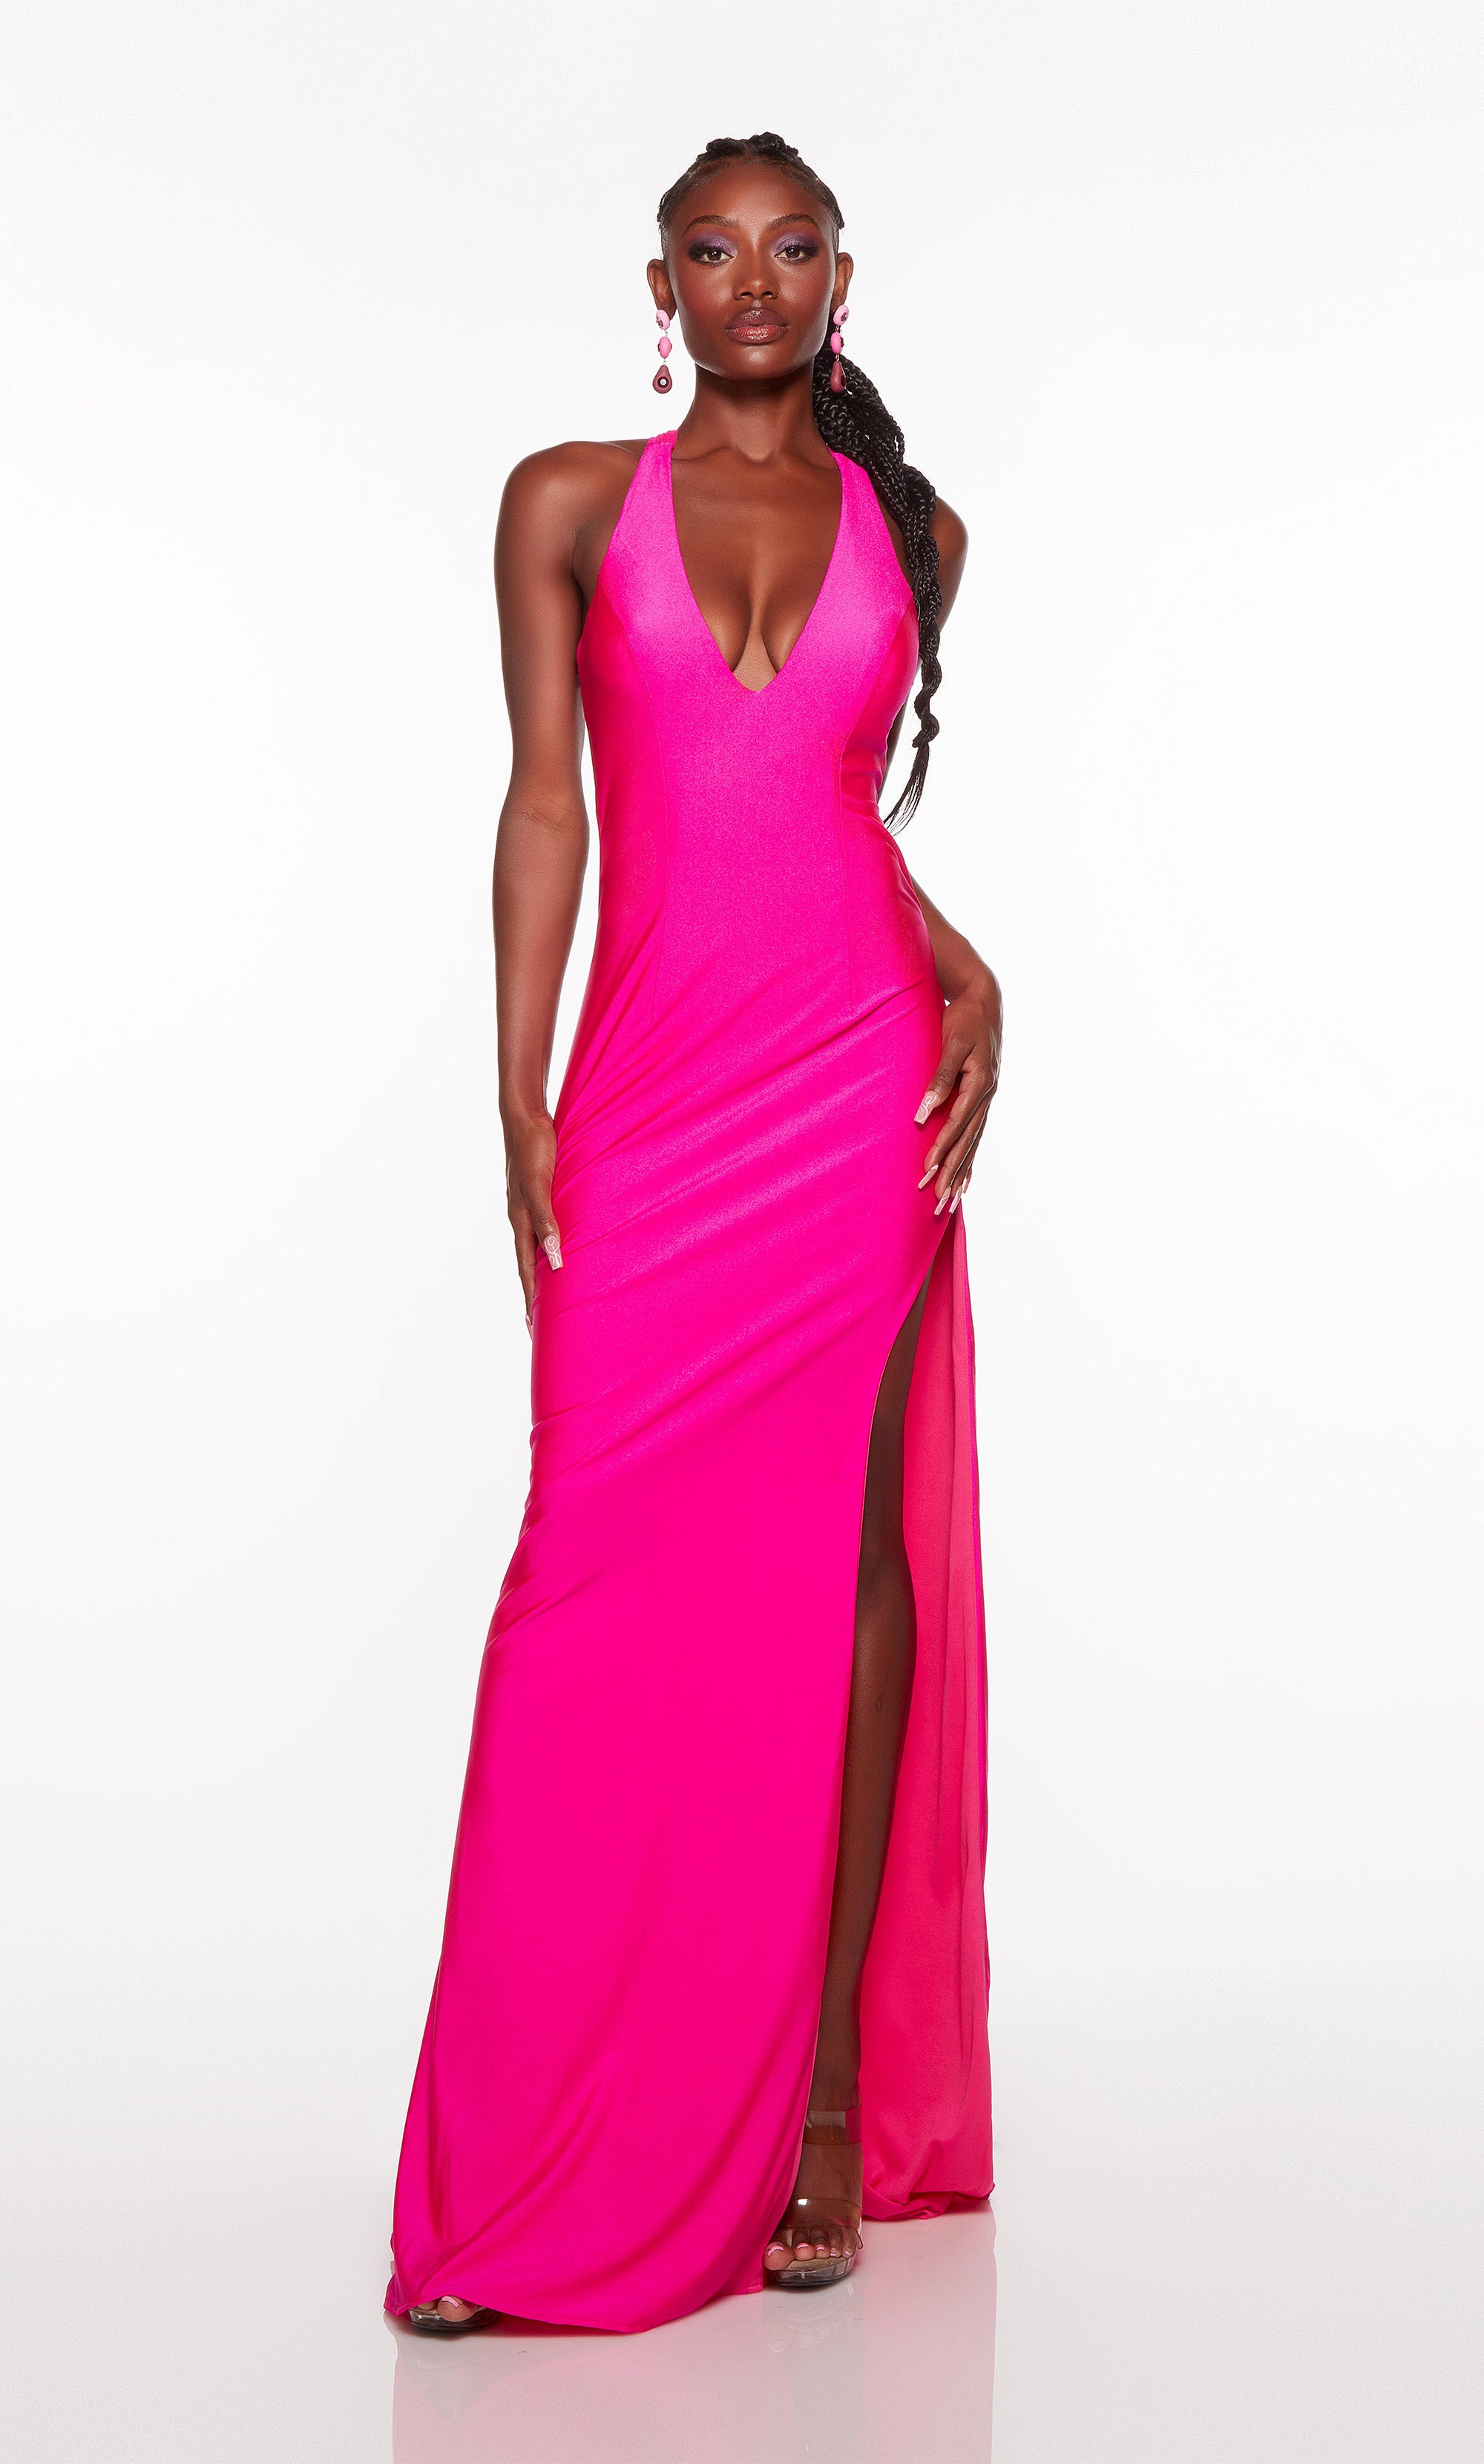 Jovani Dress 23713 | Pink Embellished A line Dress